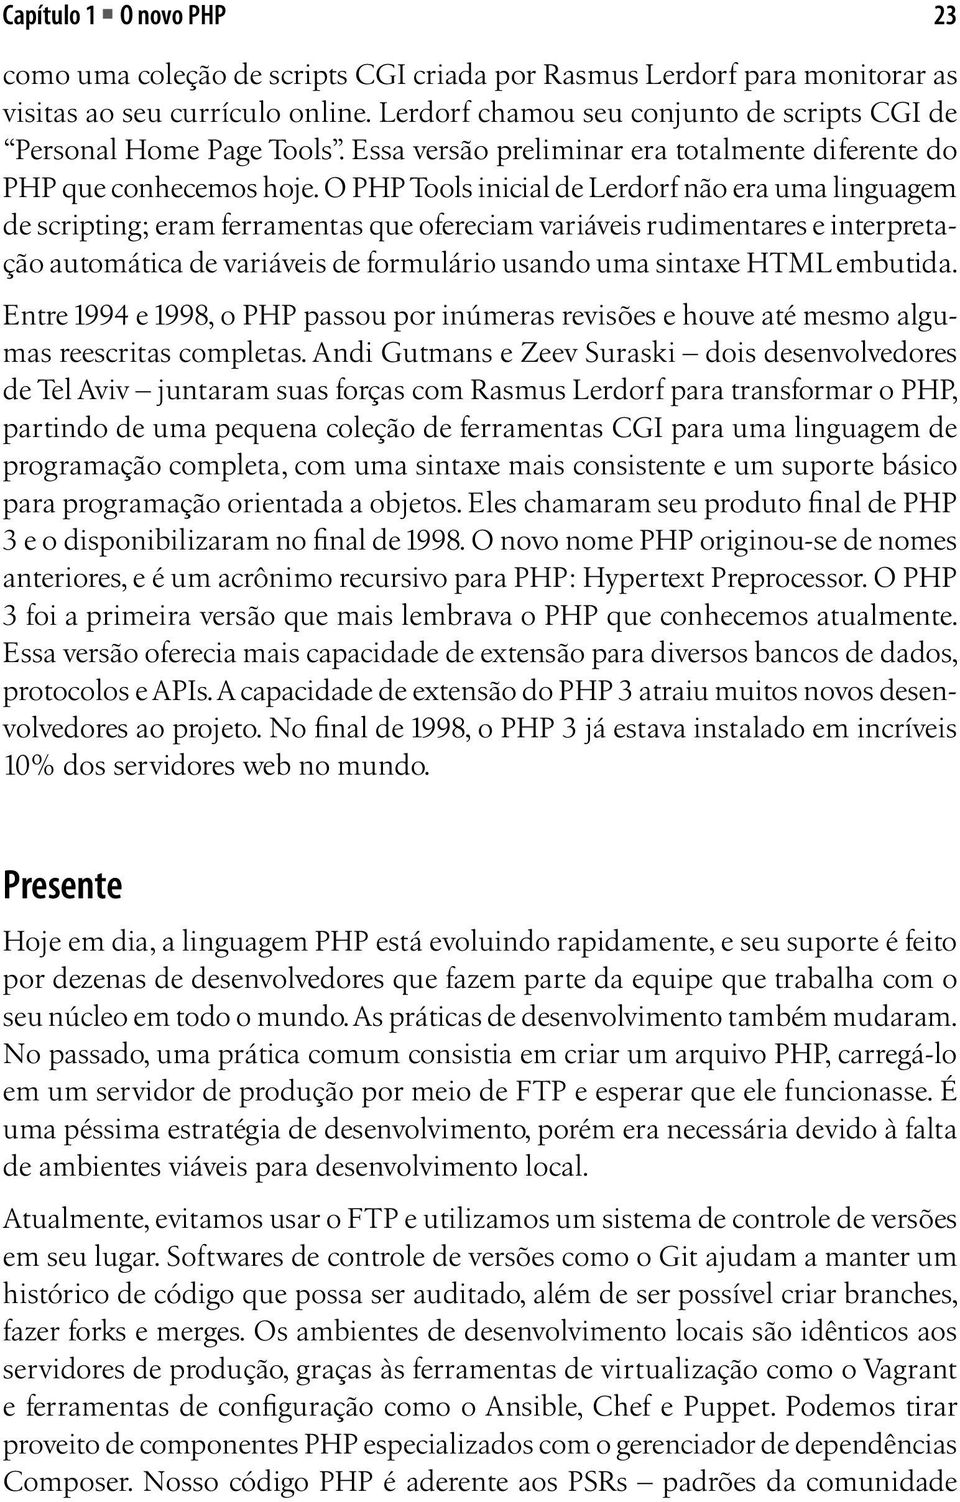 O PHP Tools inicial de Lerdorf não era uma linguagem de scripting; eram ferramentas que ofereciam variáveis rudimentares e interpretação automática de variáveis de formulário usando uma sintaxe HTML